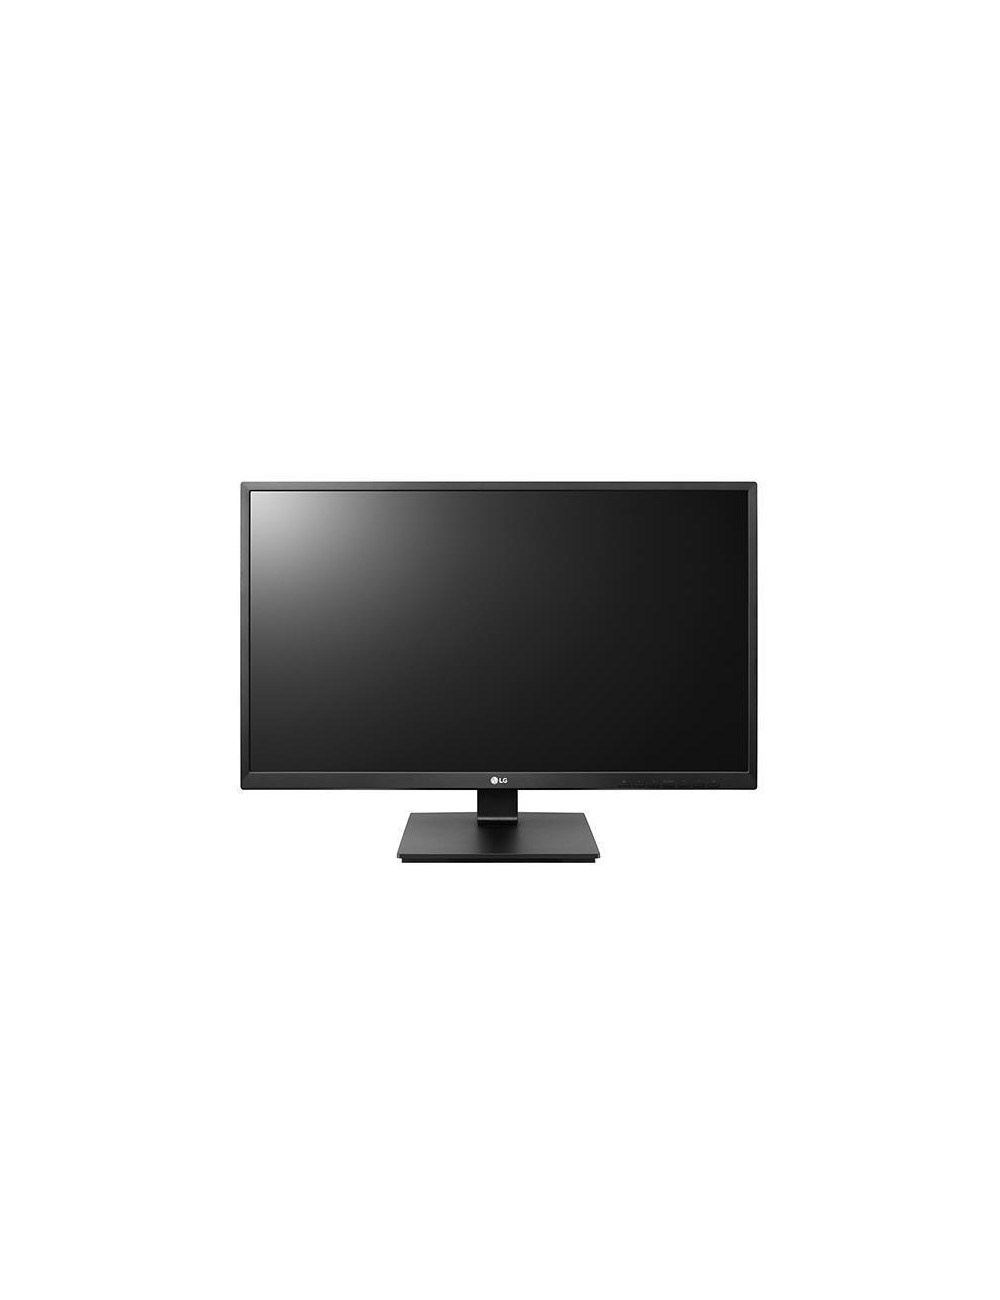 LCD Monitor|LG|24BK55YP-B|23.8"|Business|Panel IPS|1920x1080|16:9|75Hz|Matte|5 ms|Speakers|Swivel|Pivot|Height adjustable|Tilt|2